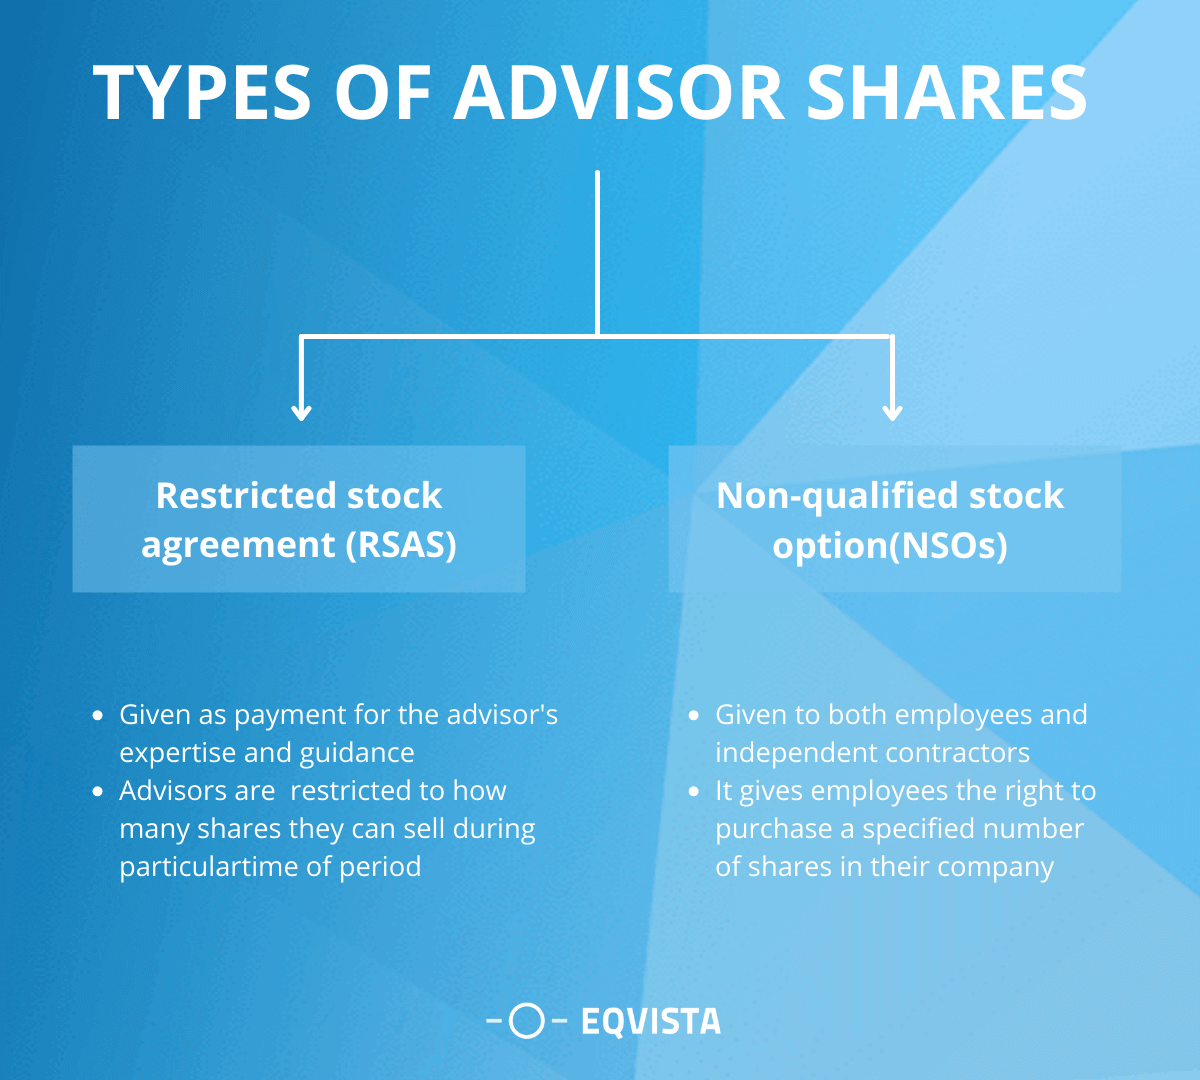 Types of Advisor Shares